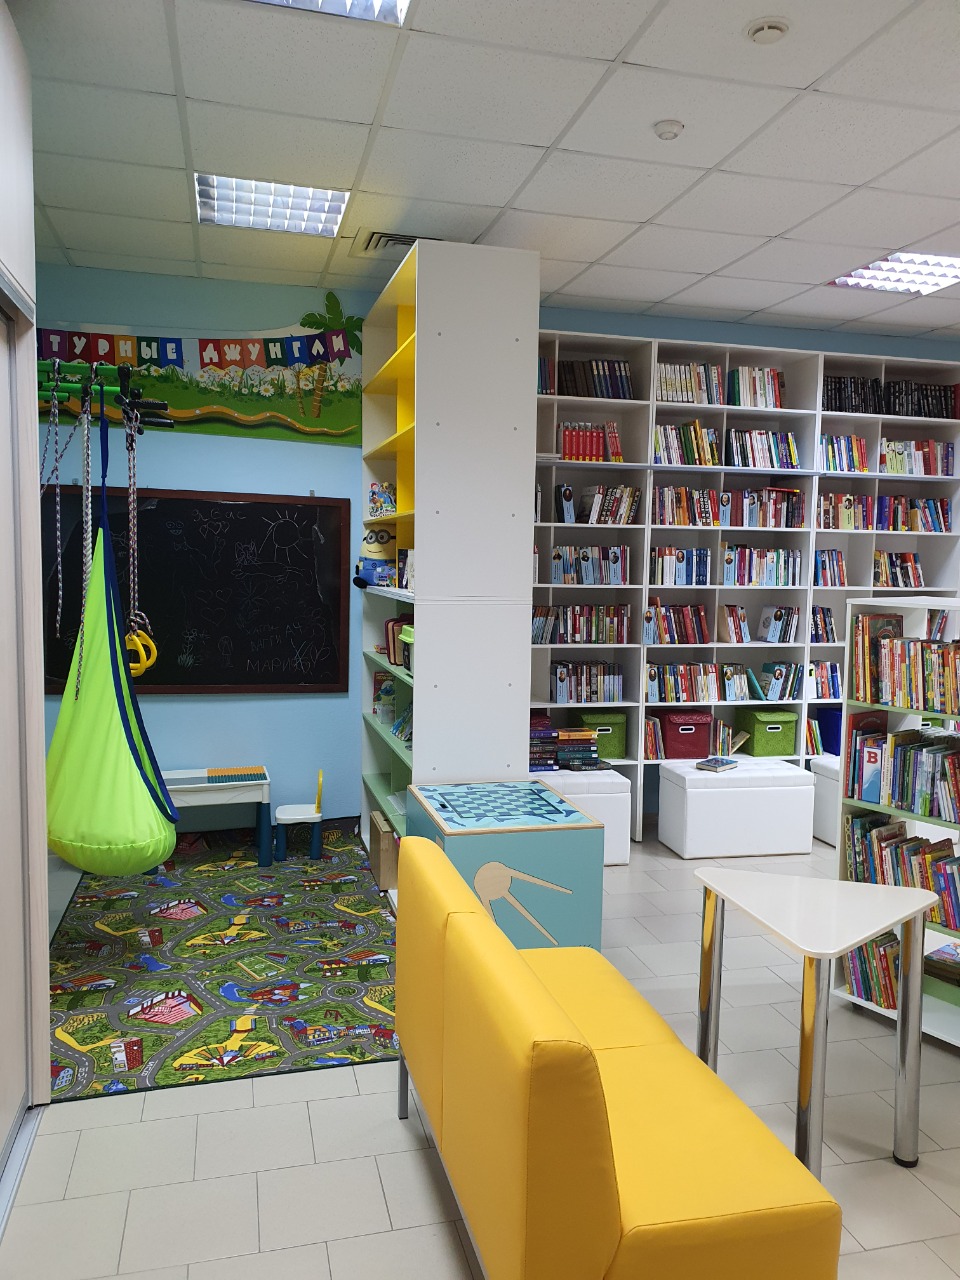 Модельная библиотека нового поколения появилась в Белогорске